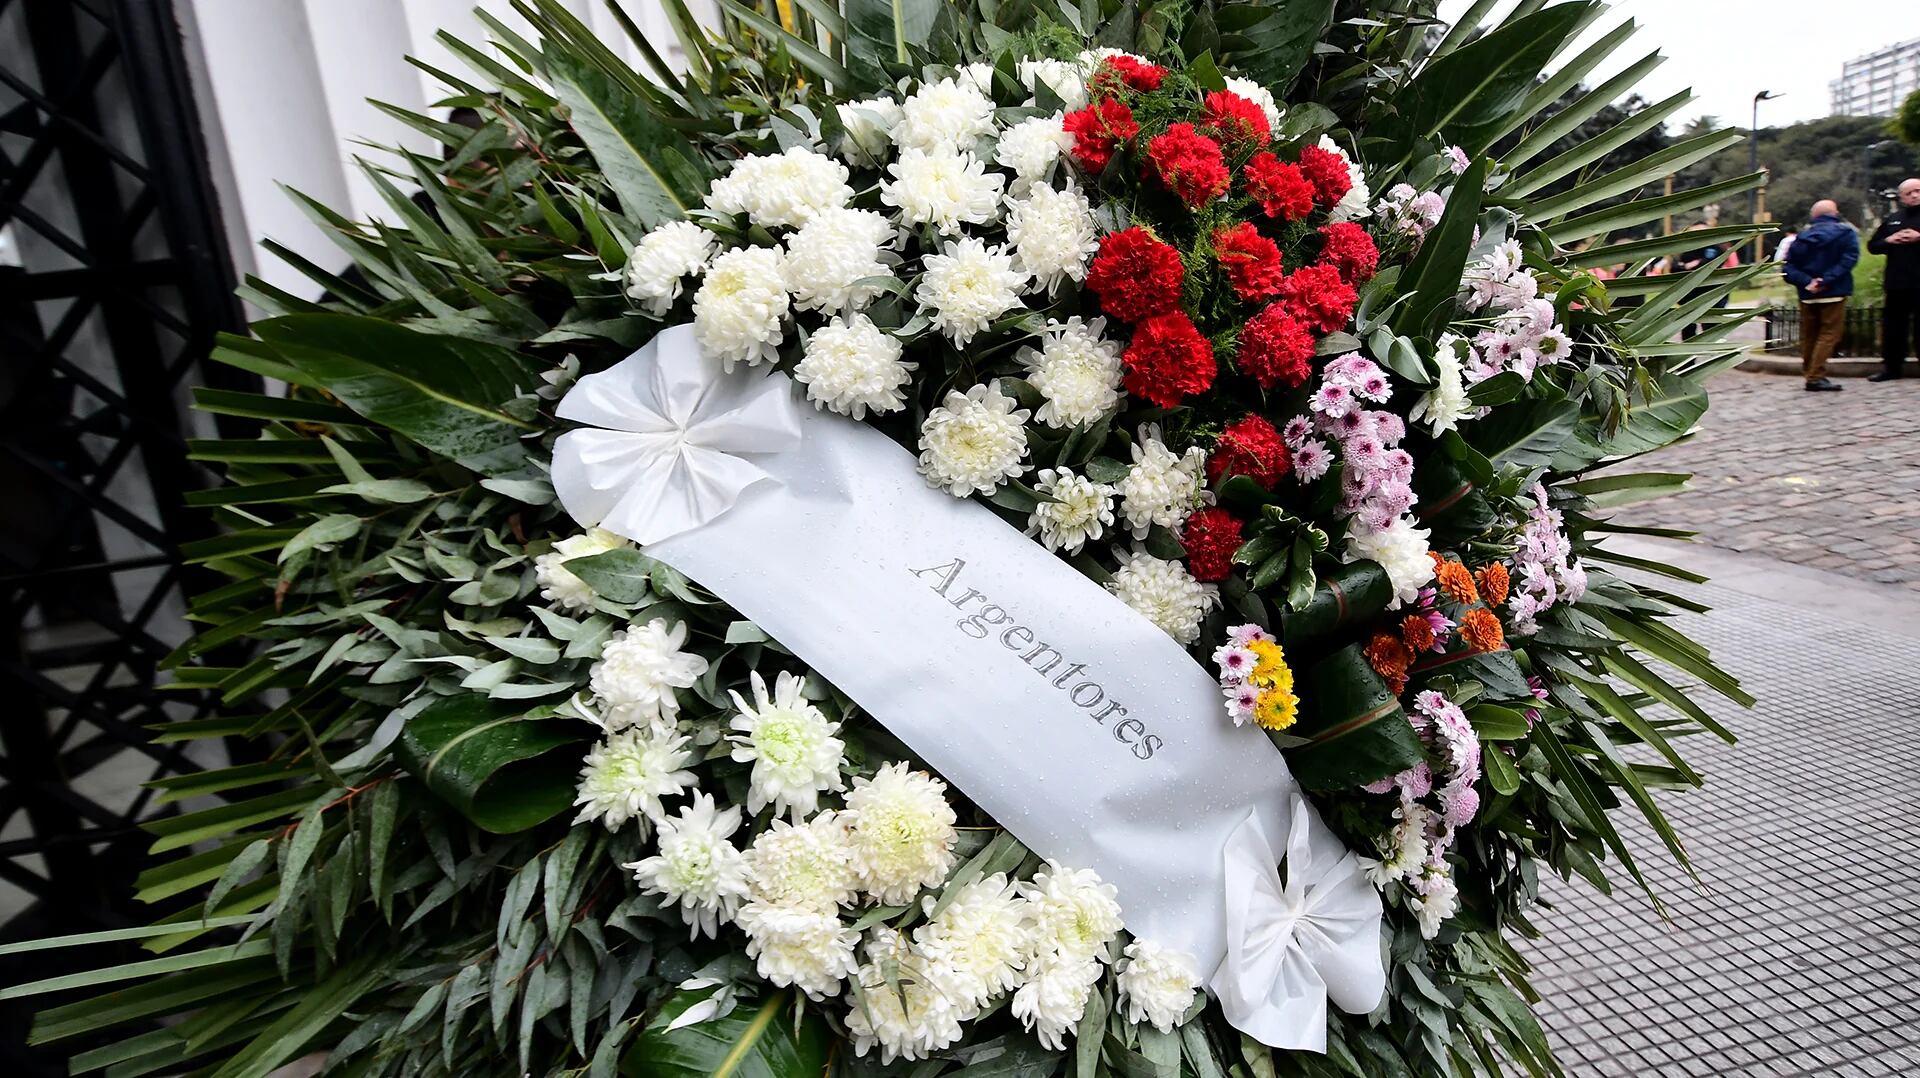 Argentores envió sus condolencias con un arreglo floral